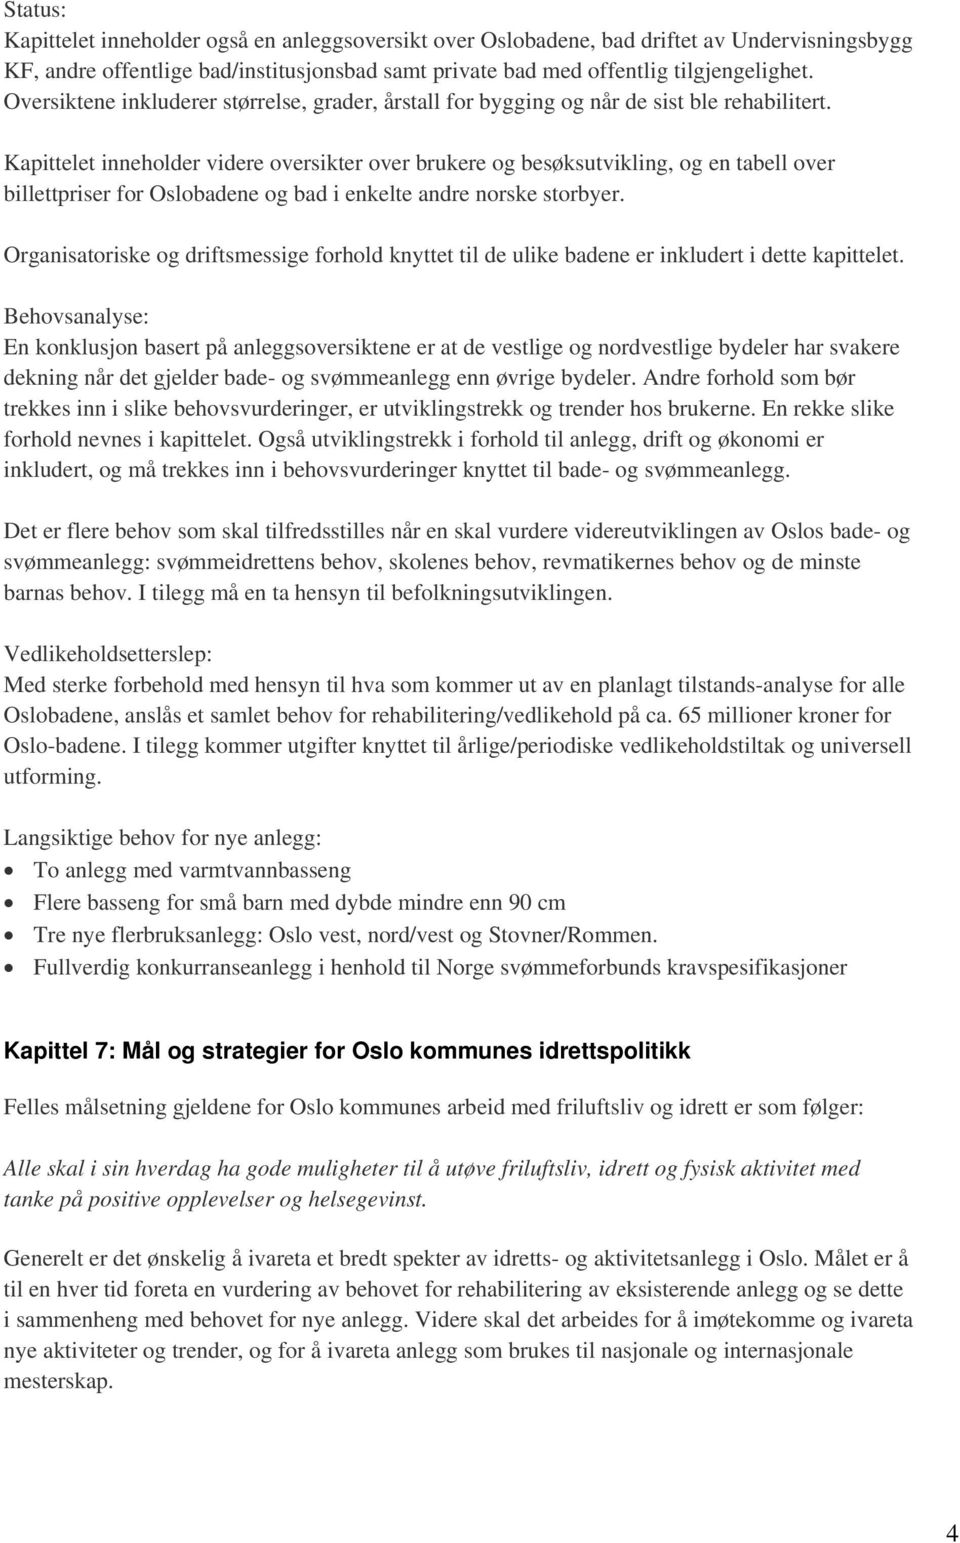 Kapittelet inneholder videre oversikter over brukere og besøksutvikling, og en tabell over billettpriser for Oslobadene og bad i enkelte andre norske storbyer.